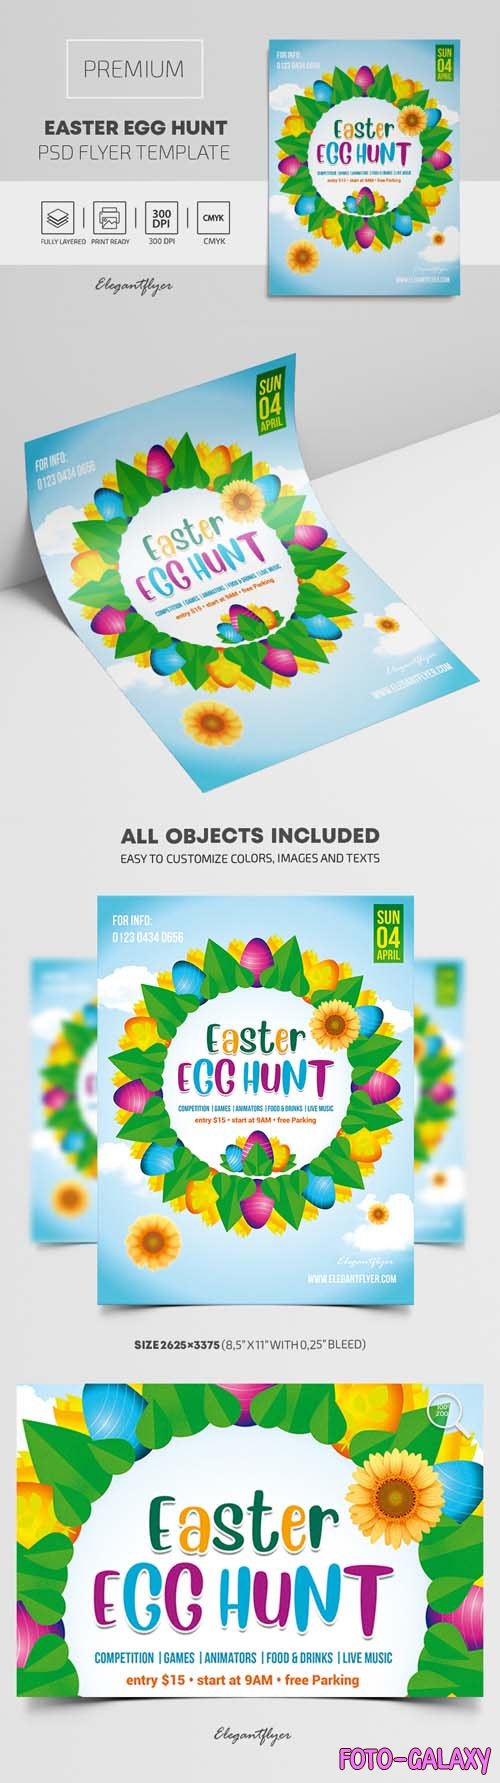 Easter Egg Hunt Premium PSD Flyer Template